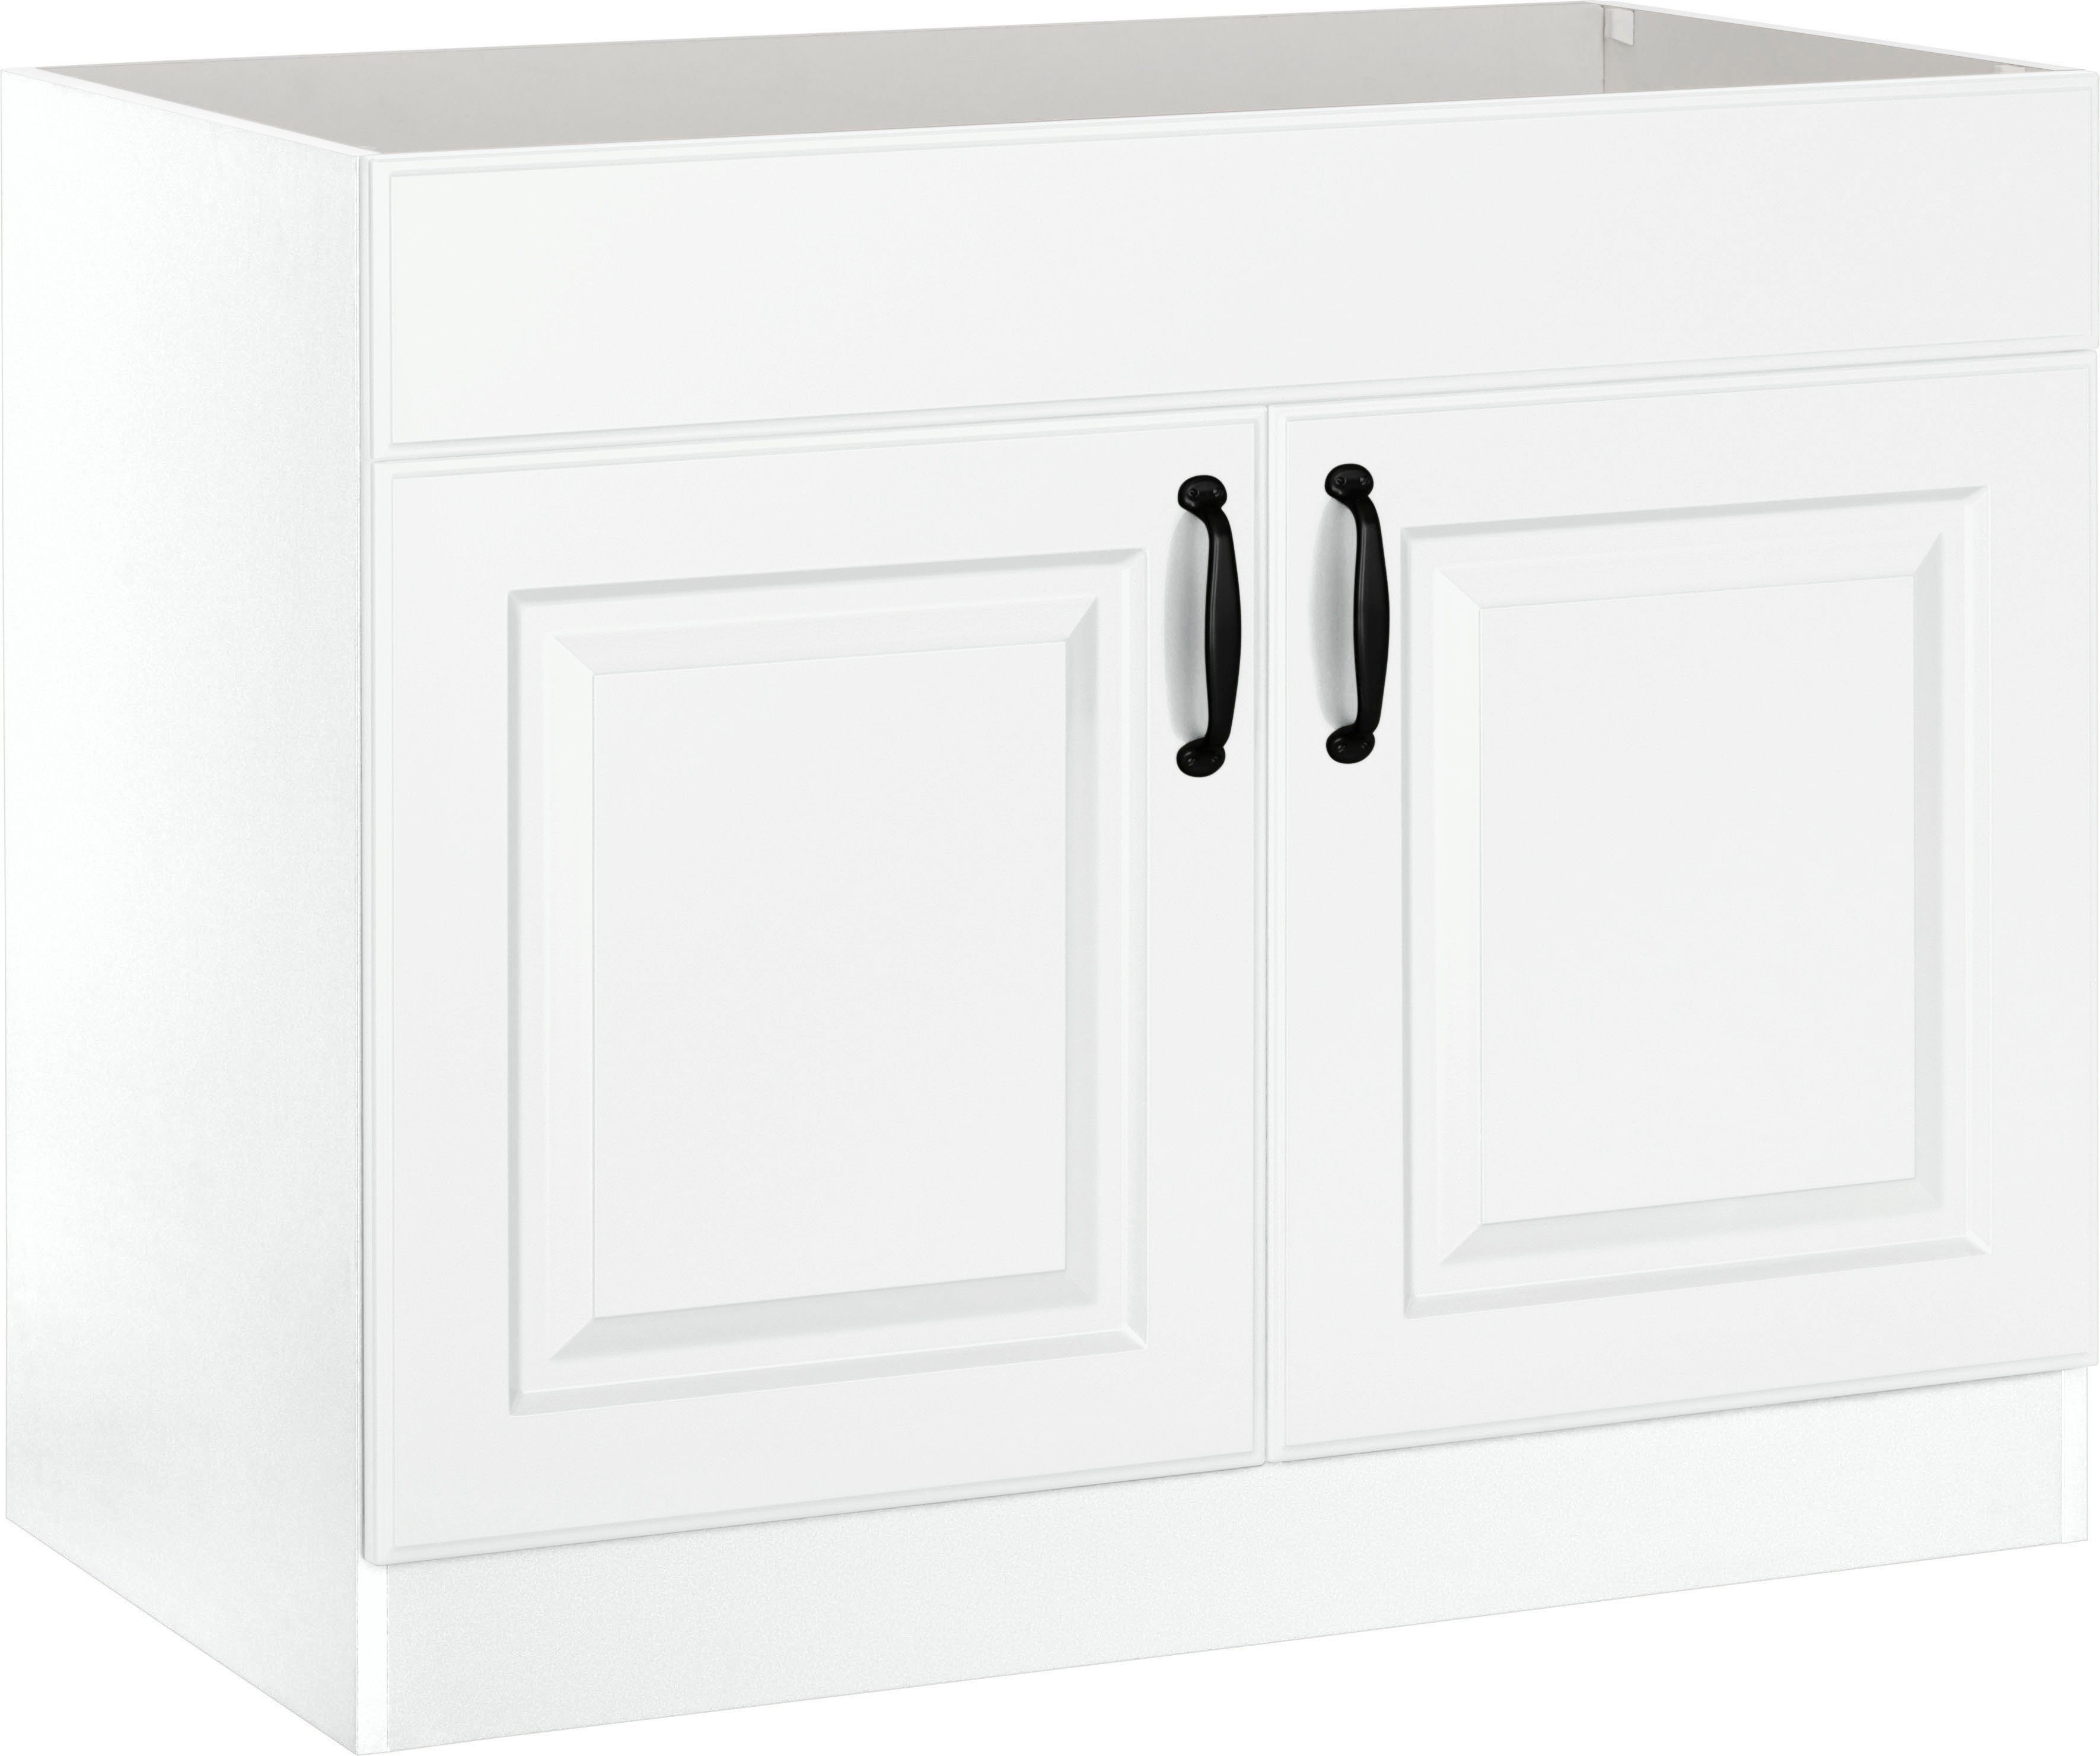 wiho Küchen Spülenschrank Erla 100 cm breit mit Kassettenfront, ohne Arbeitsplatte Weiß/Weiß | Weiß